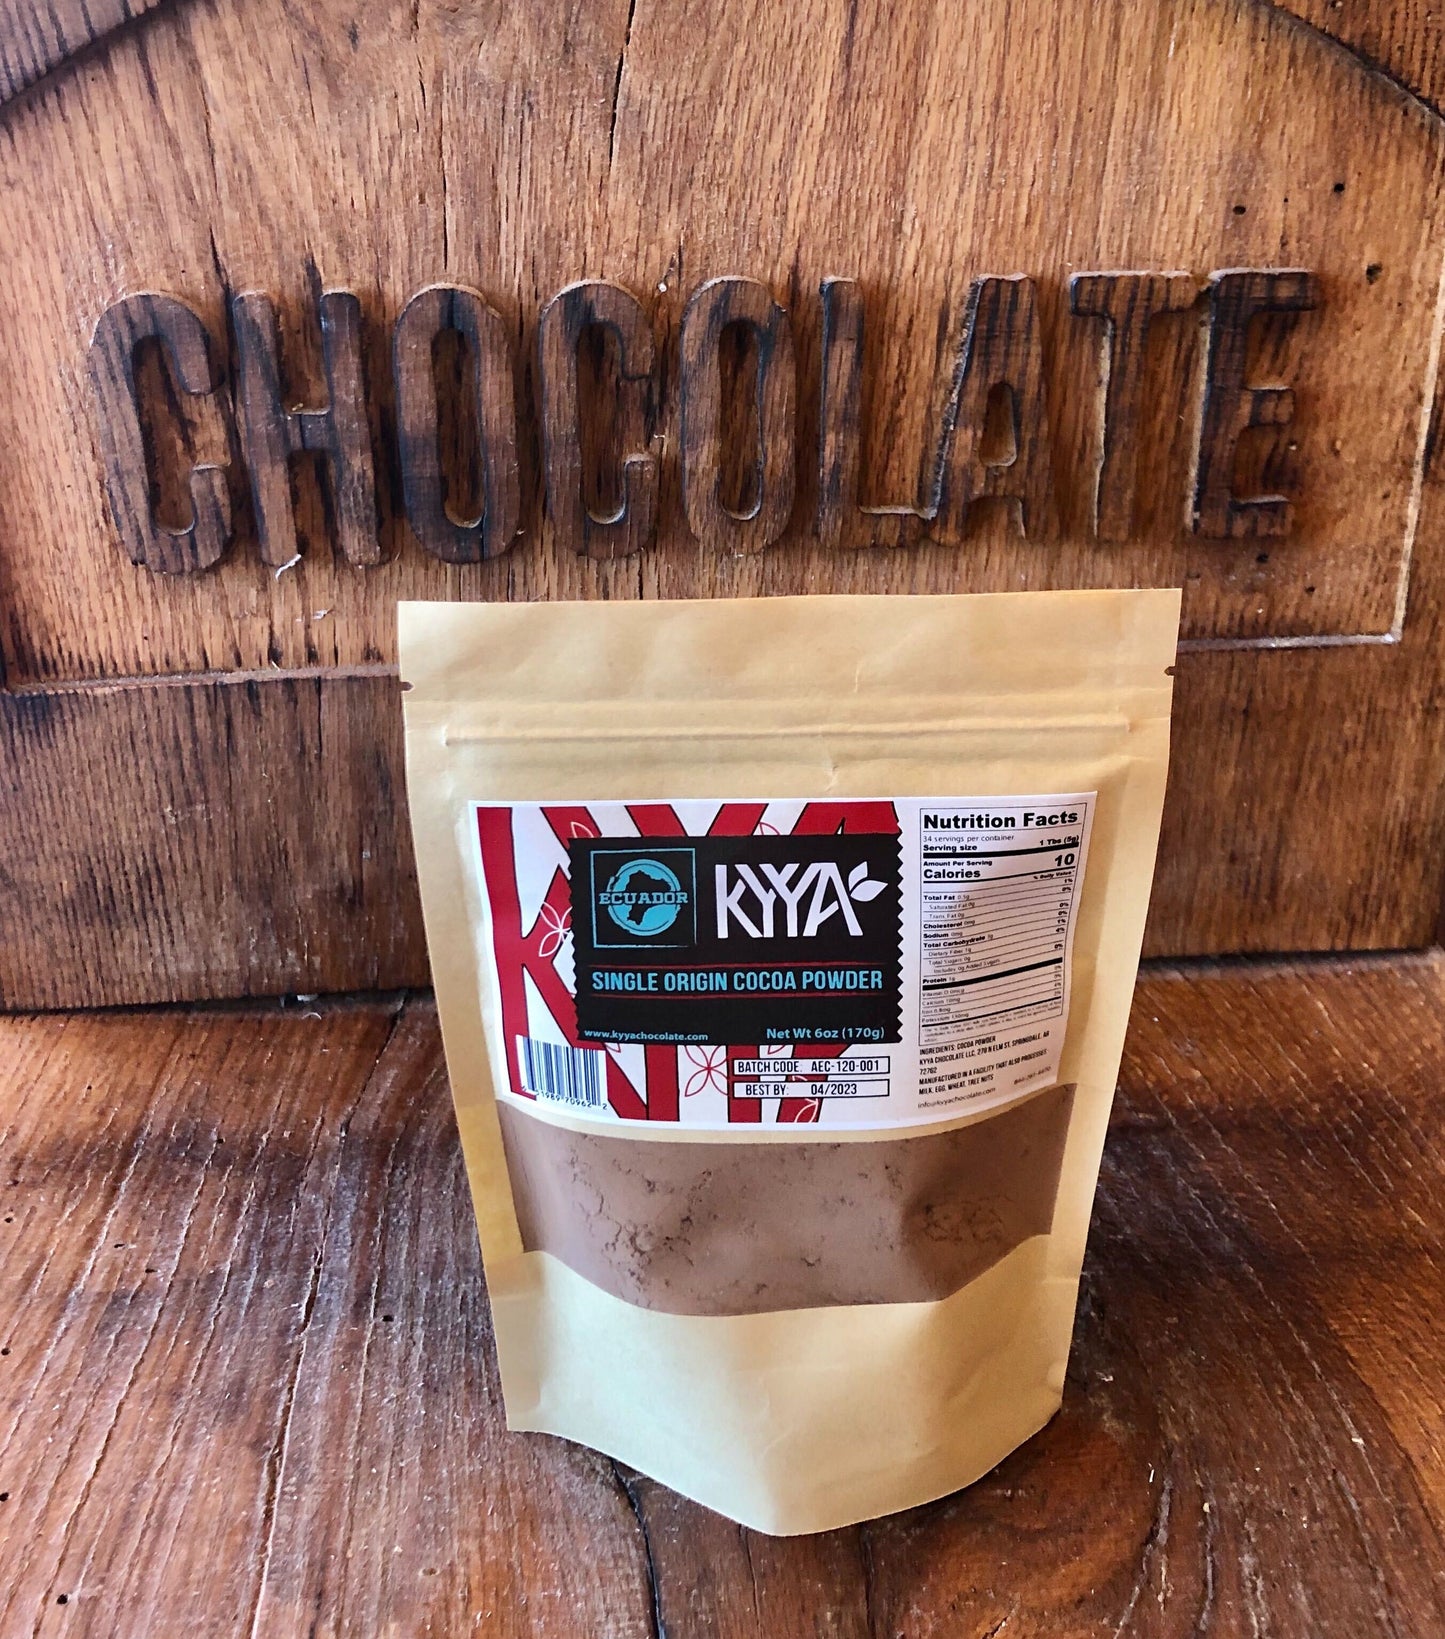 6oz Ecuador Single Origin Cocoa Powder